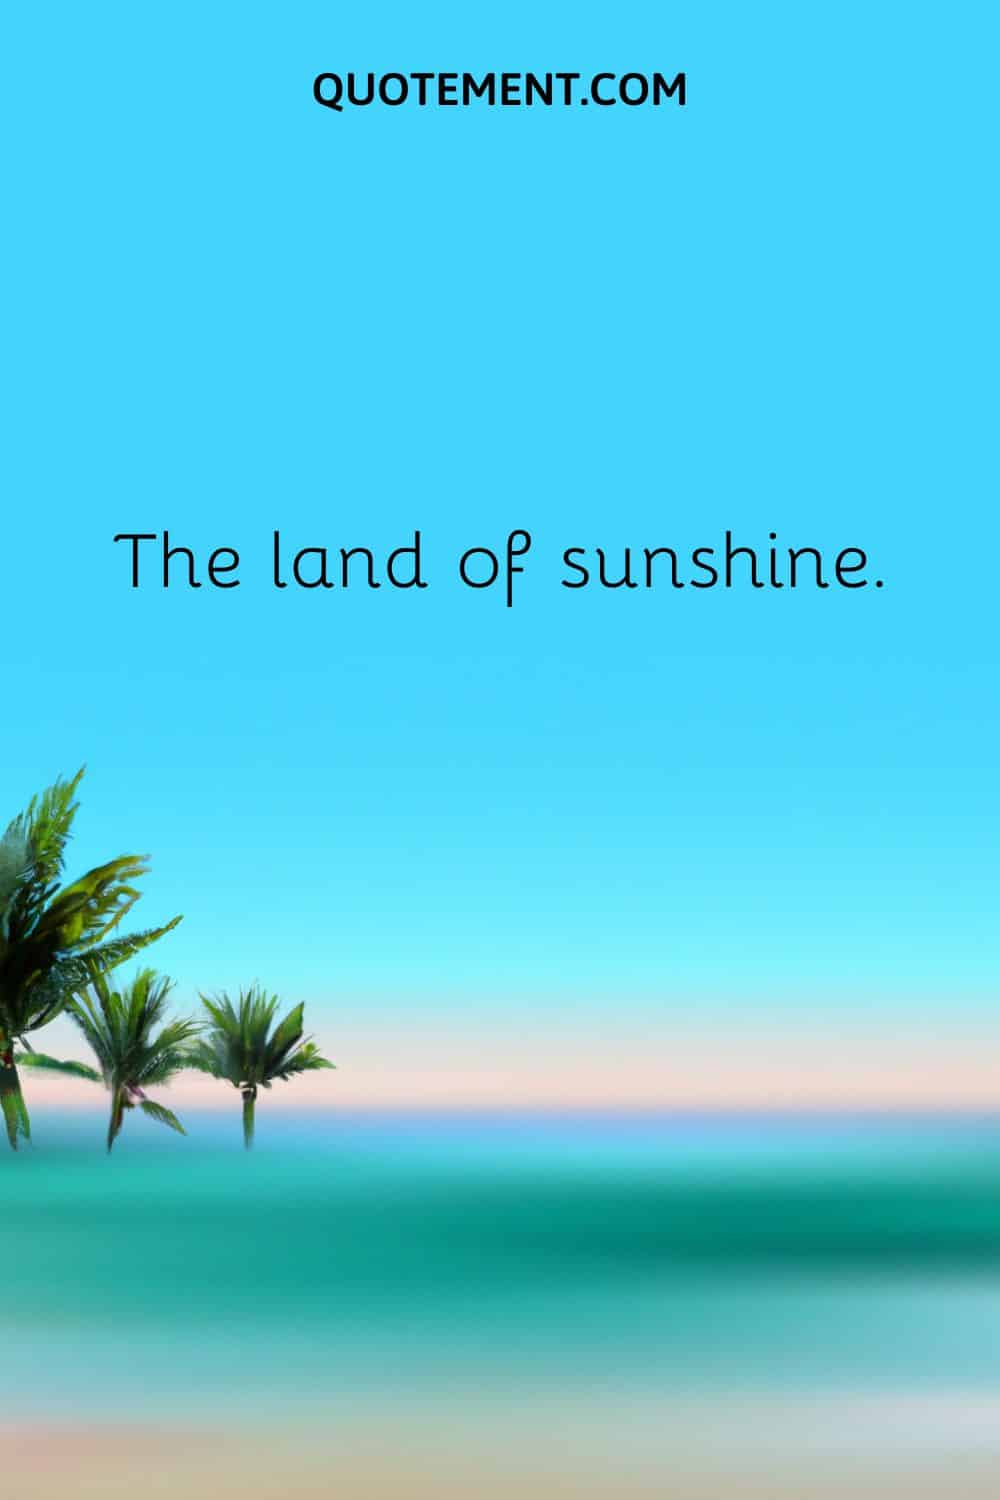 The land of sunshine